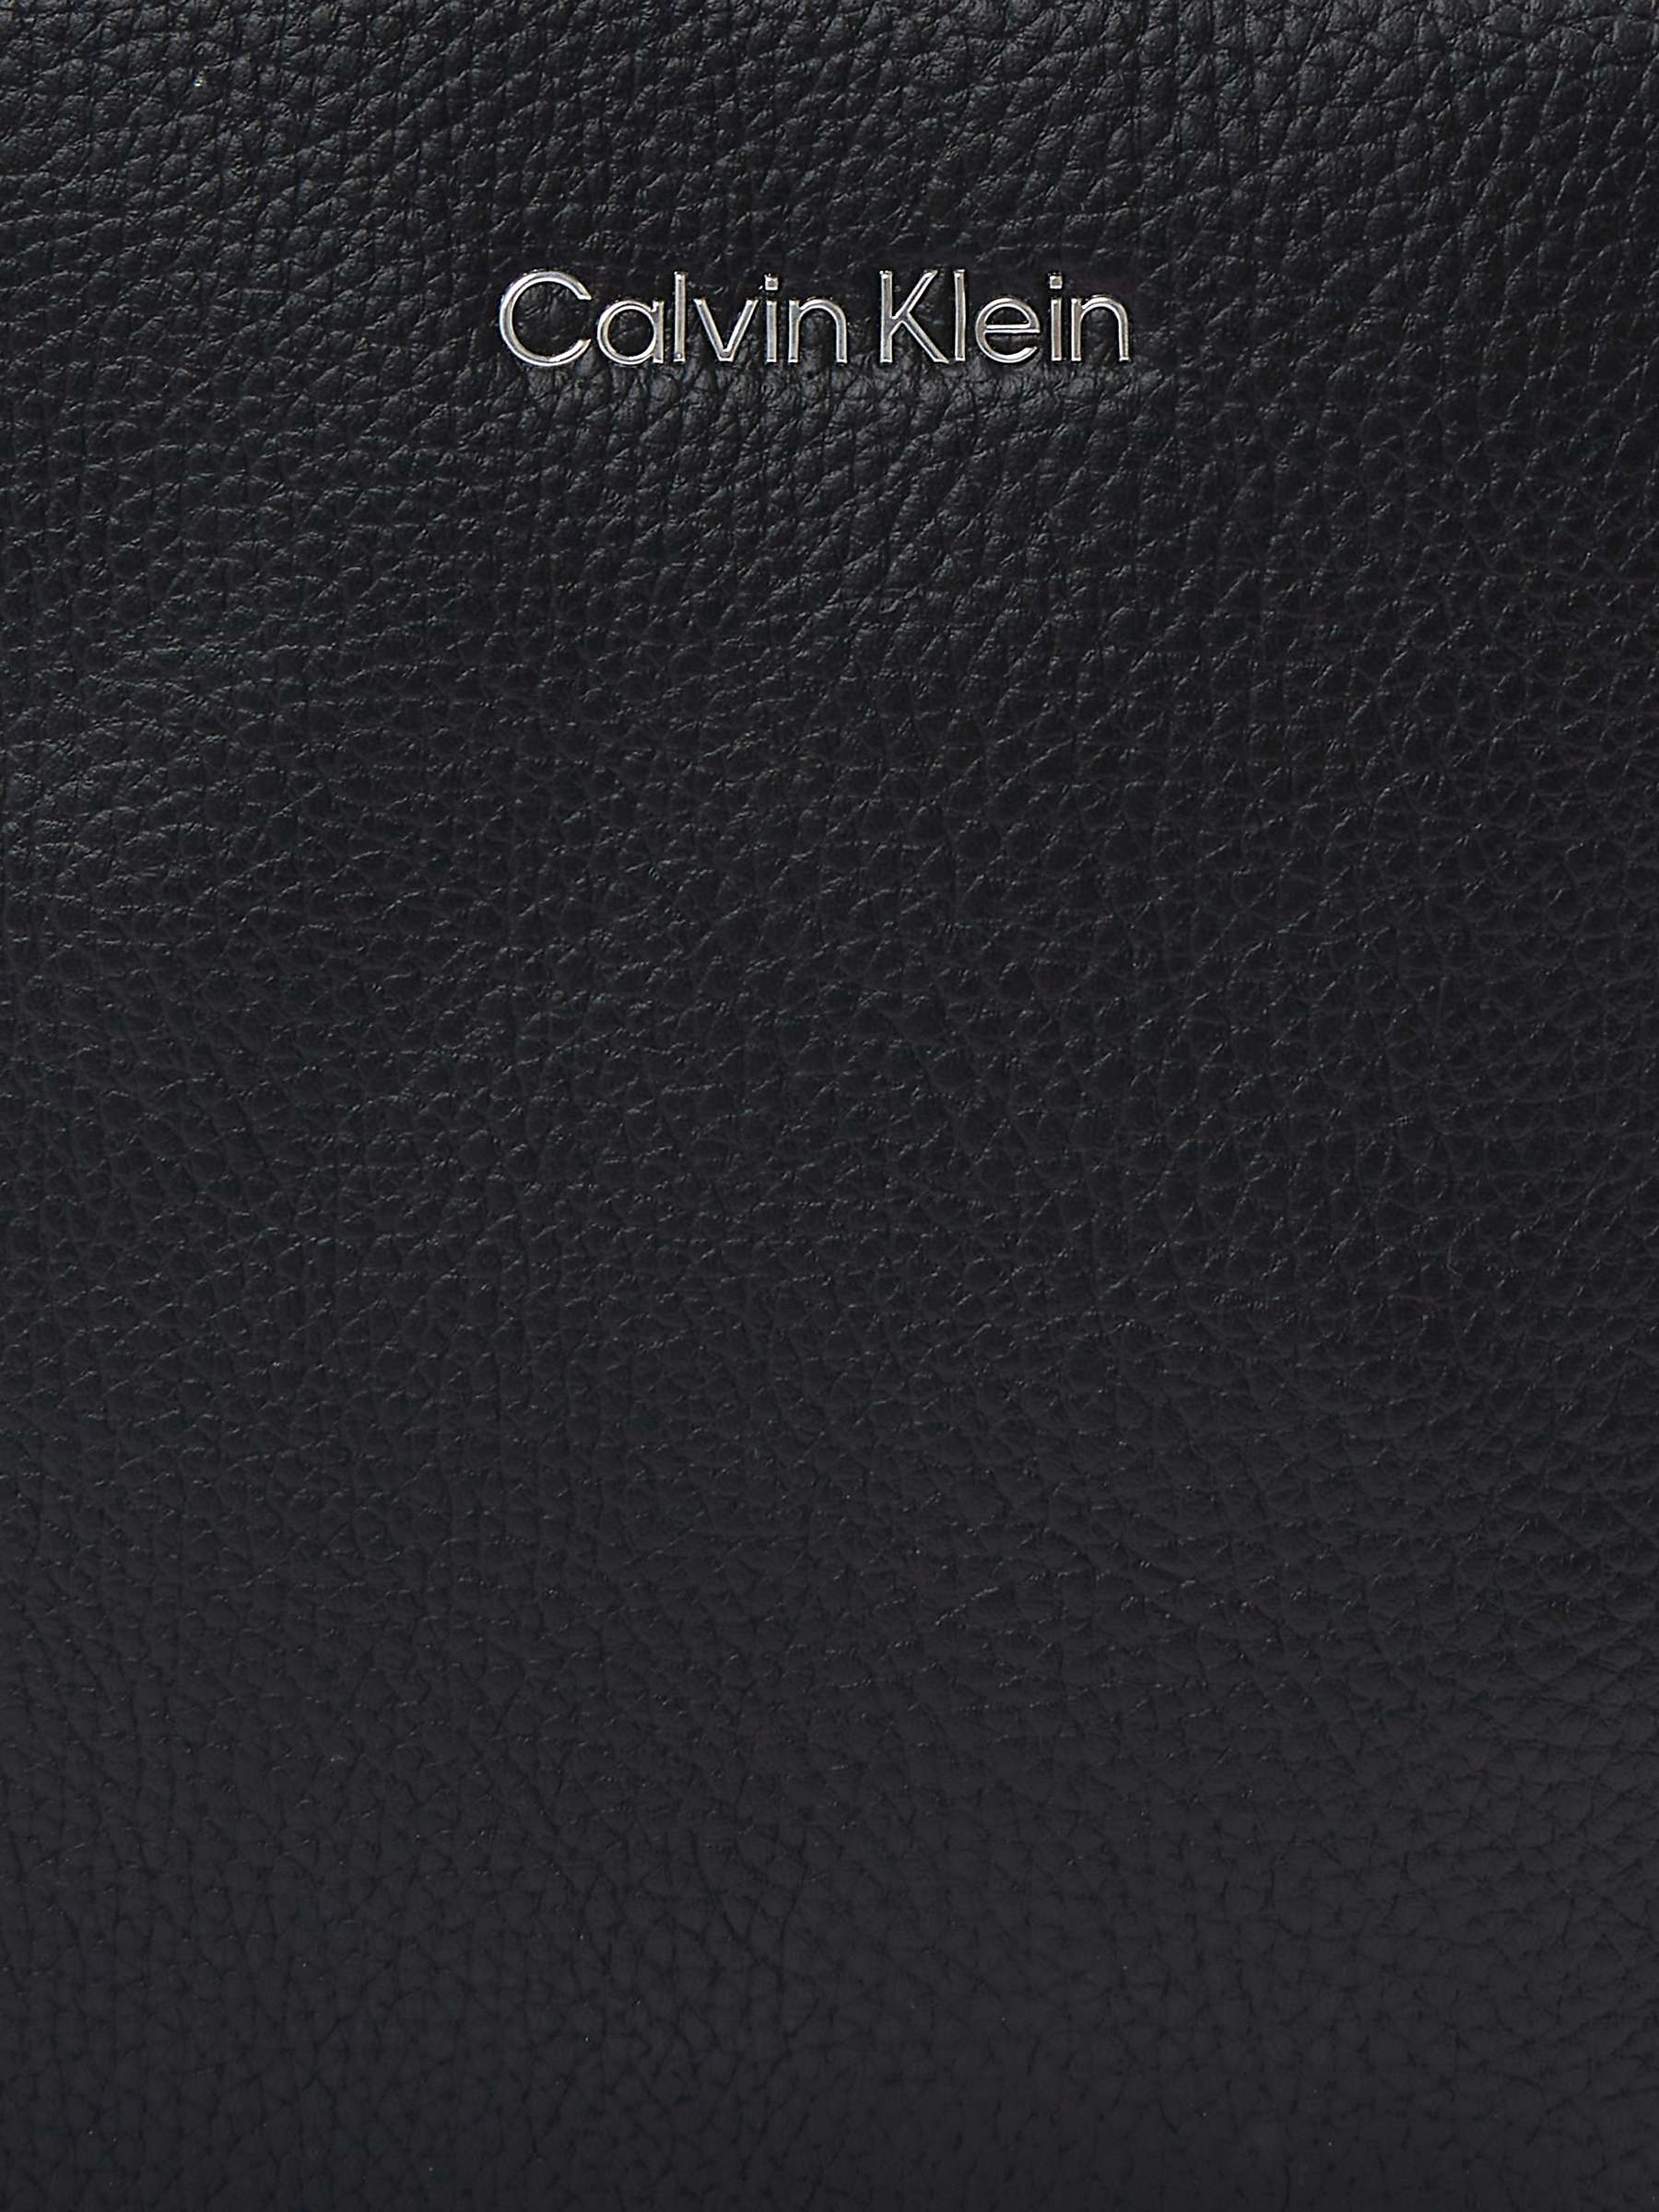 Buy Calvin Klein Messenger Bag, Black Online at johnlewis.com